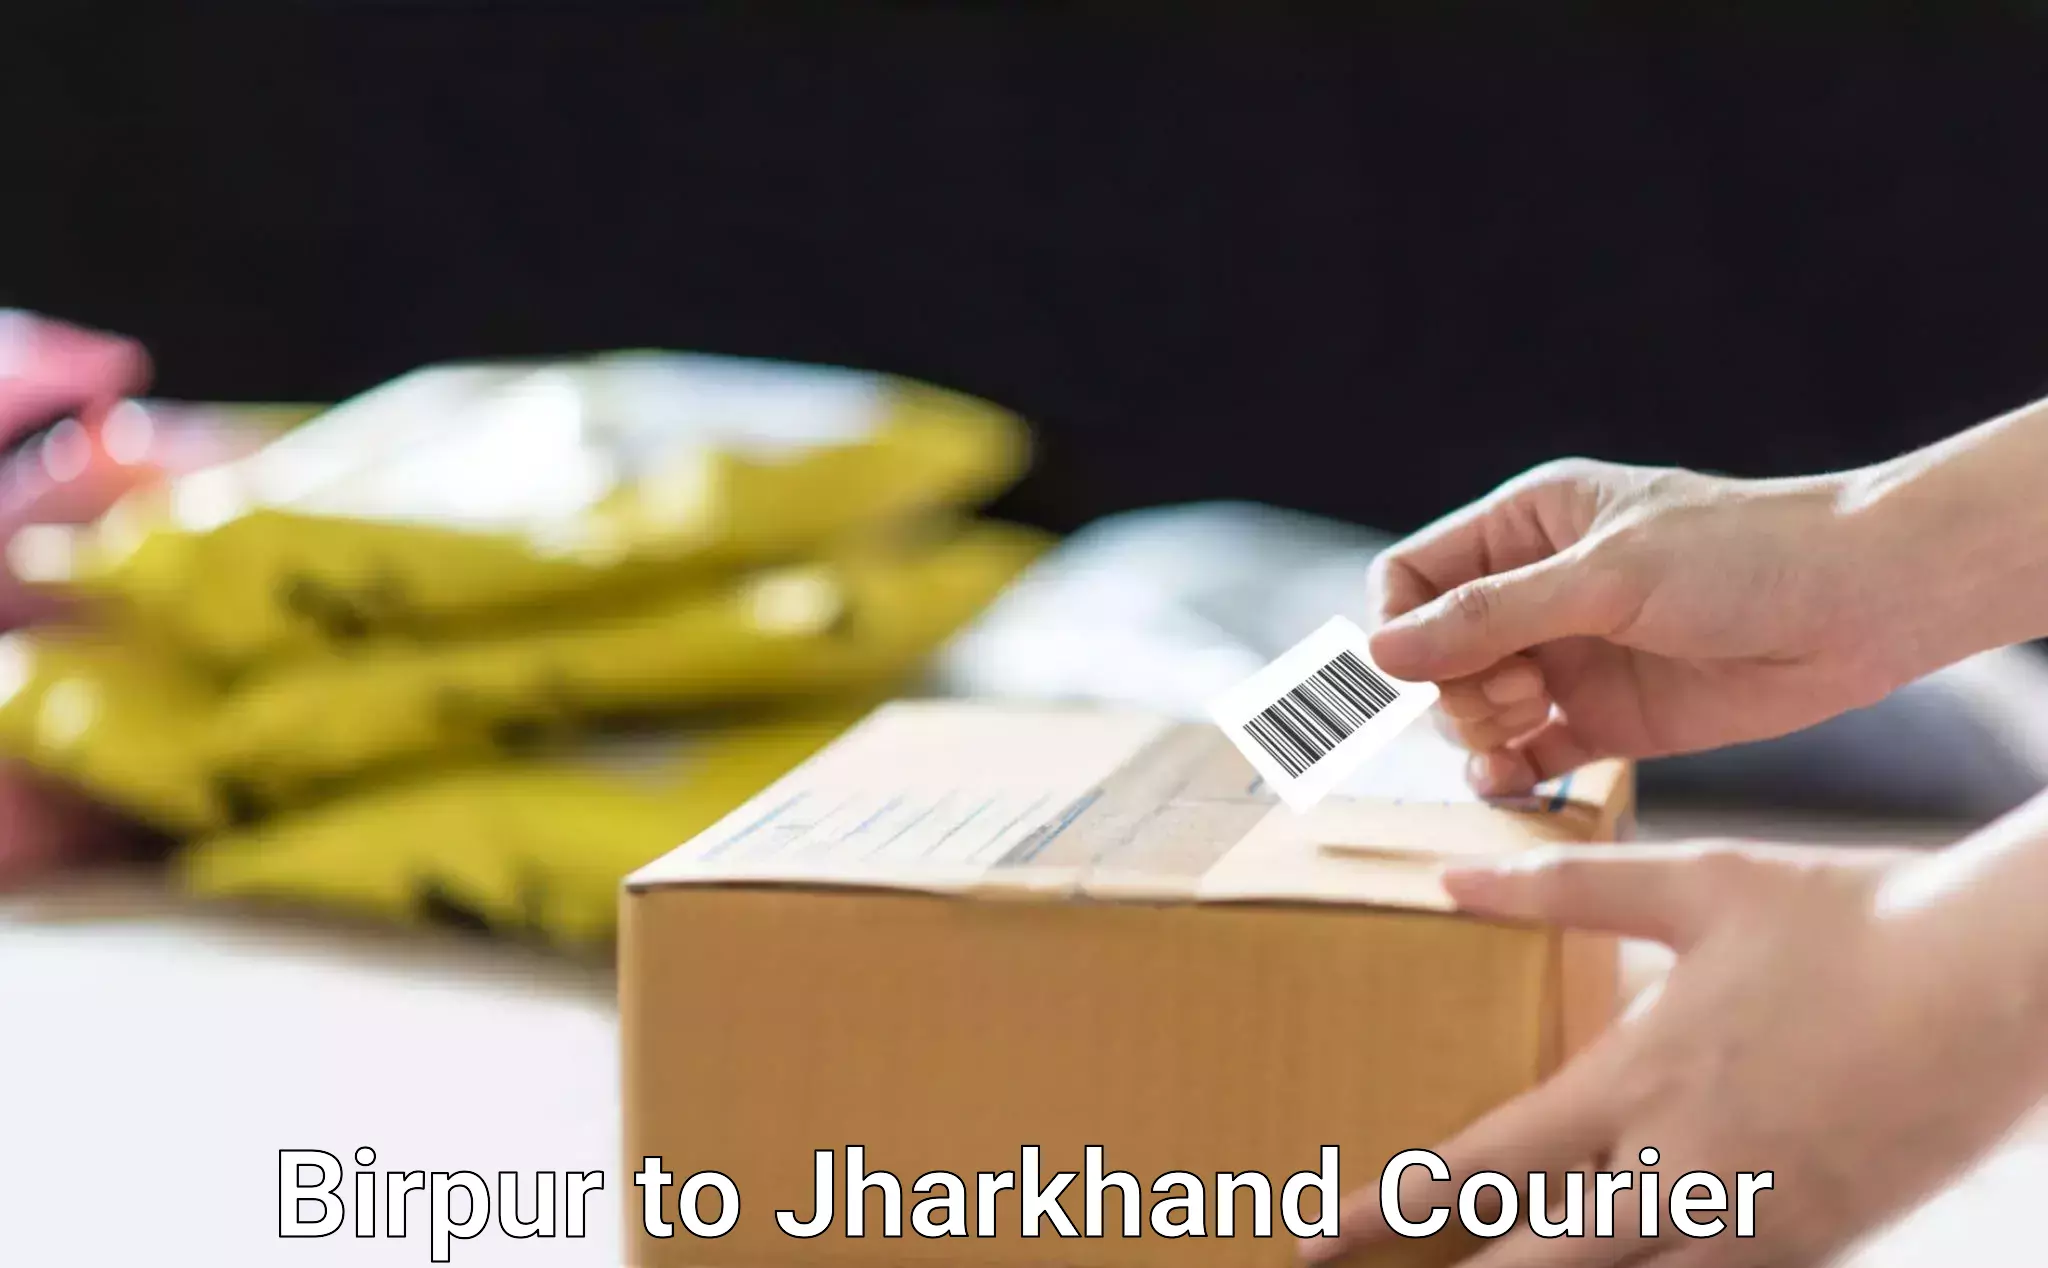 Door-to-door relocation services Birpur to Jharkhand